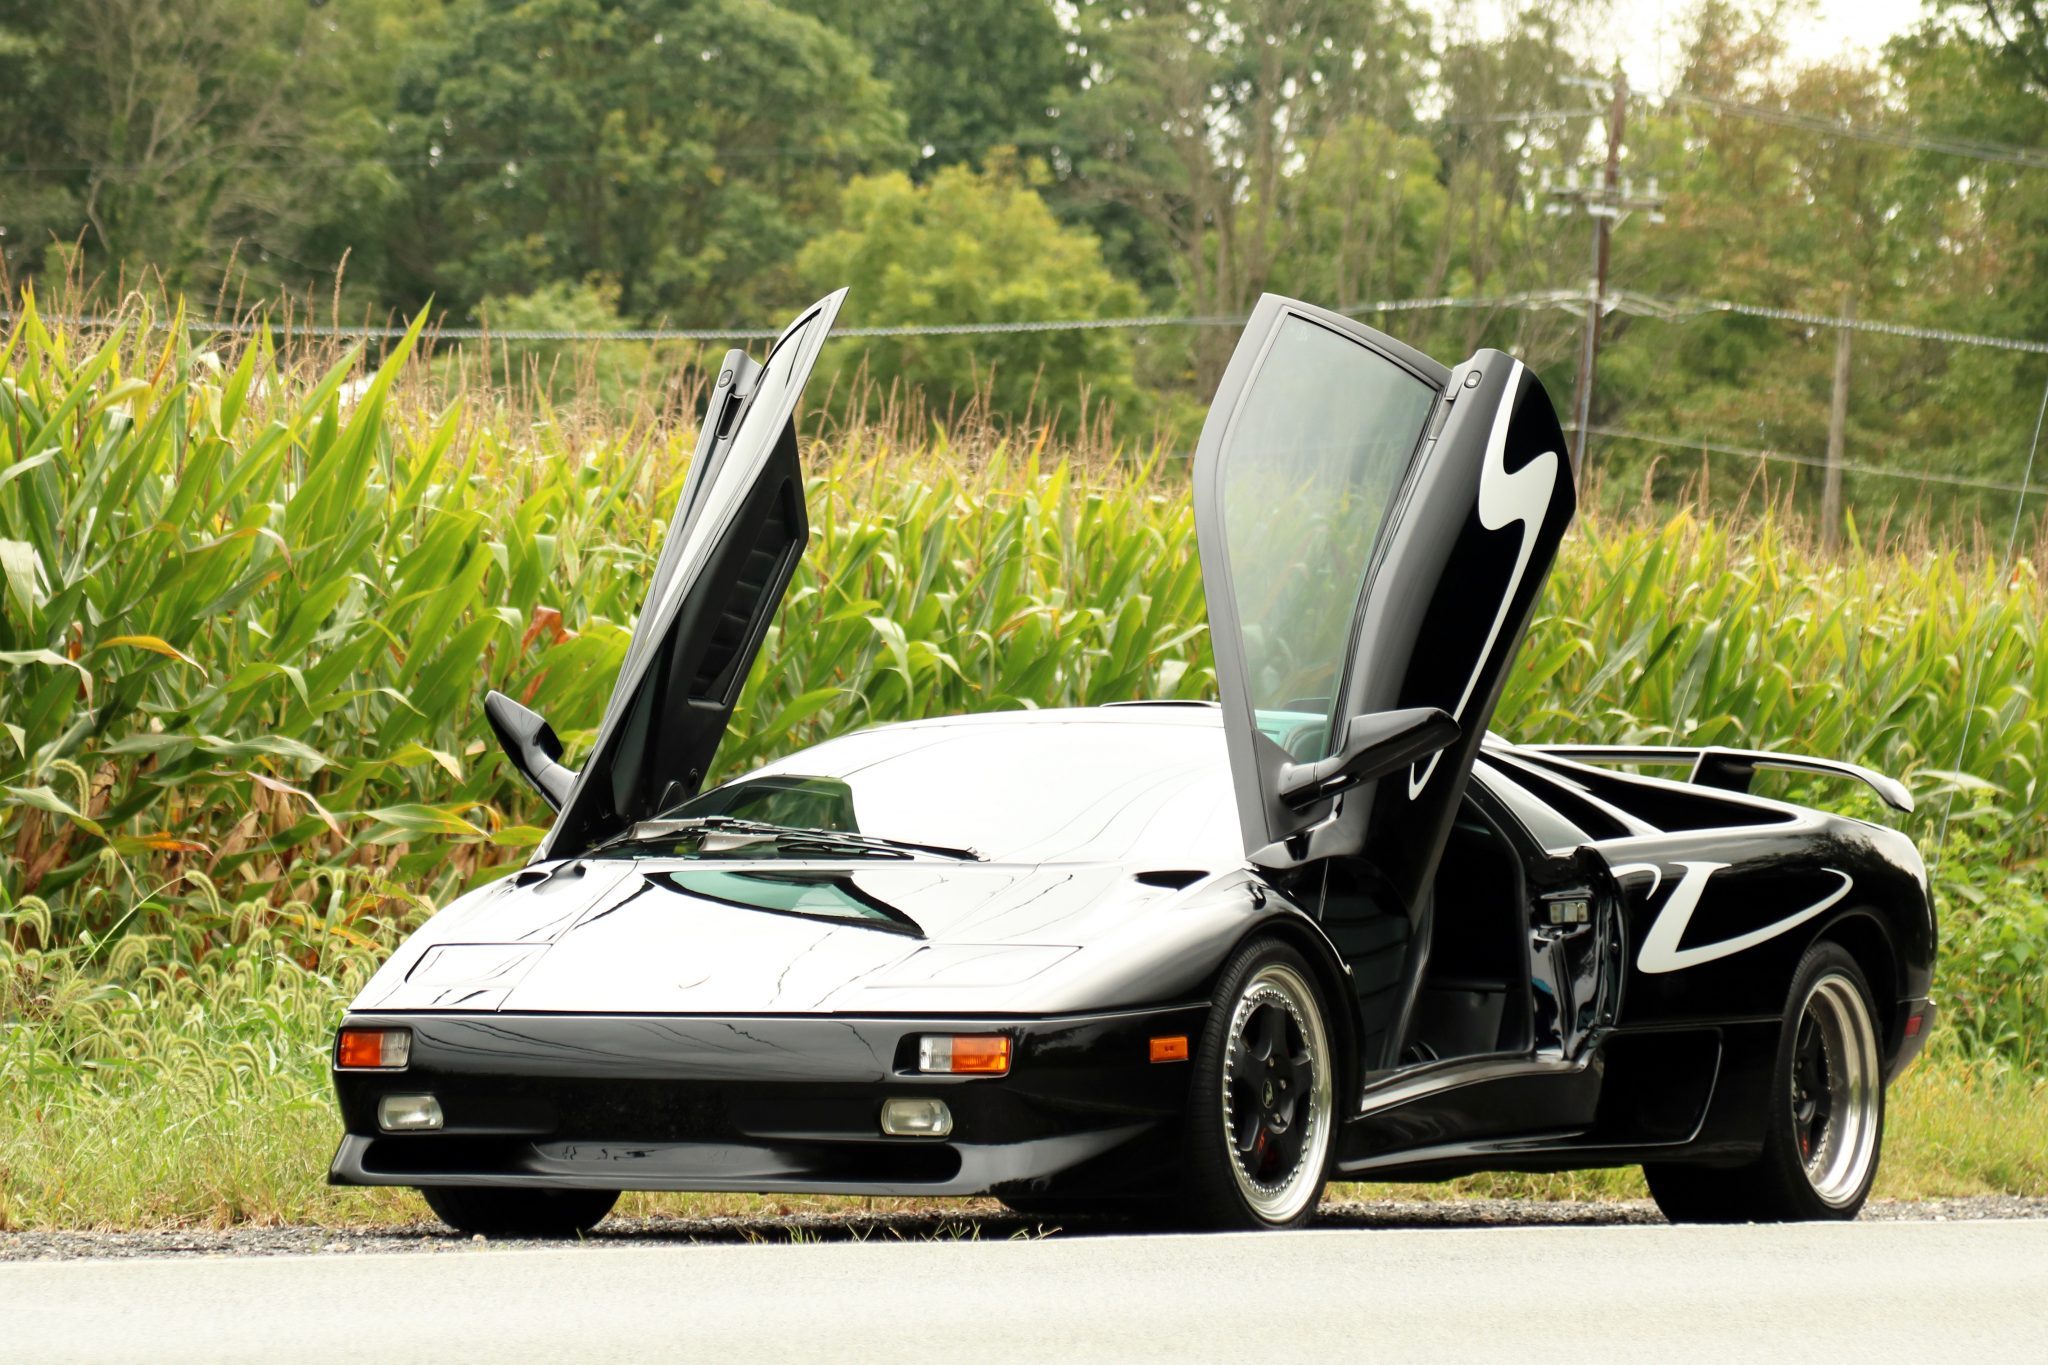 Lamborghini LM002 trafiło na sprzedaż. Ma 58 tys. km przebiegu i wysoką cenę